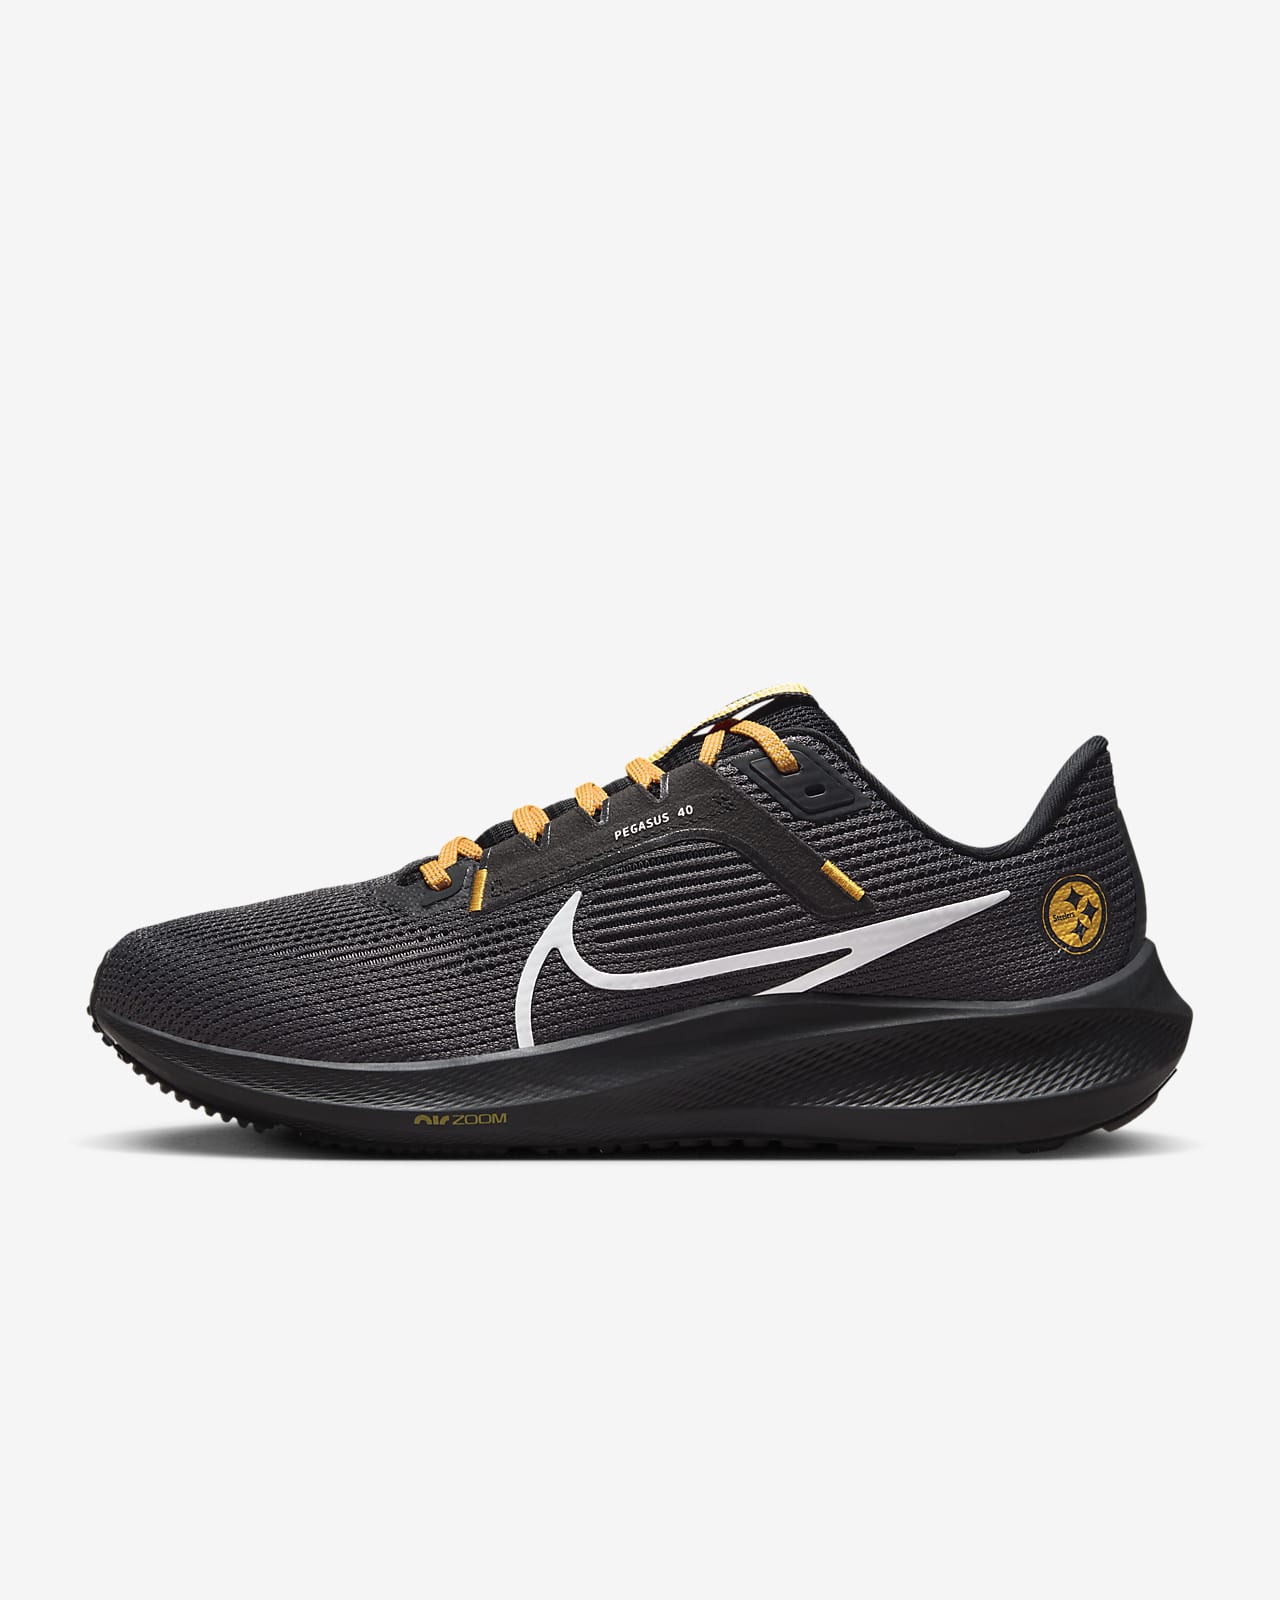 Nike Pegasus 40 (NFL Pittsburgh Steelers) Men's Road Running Shoes